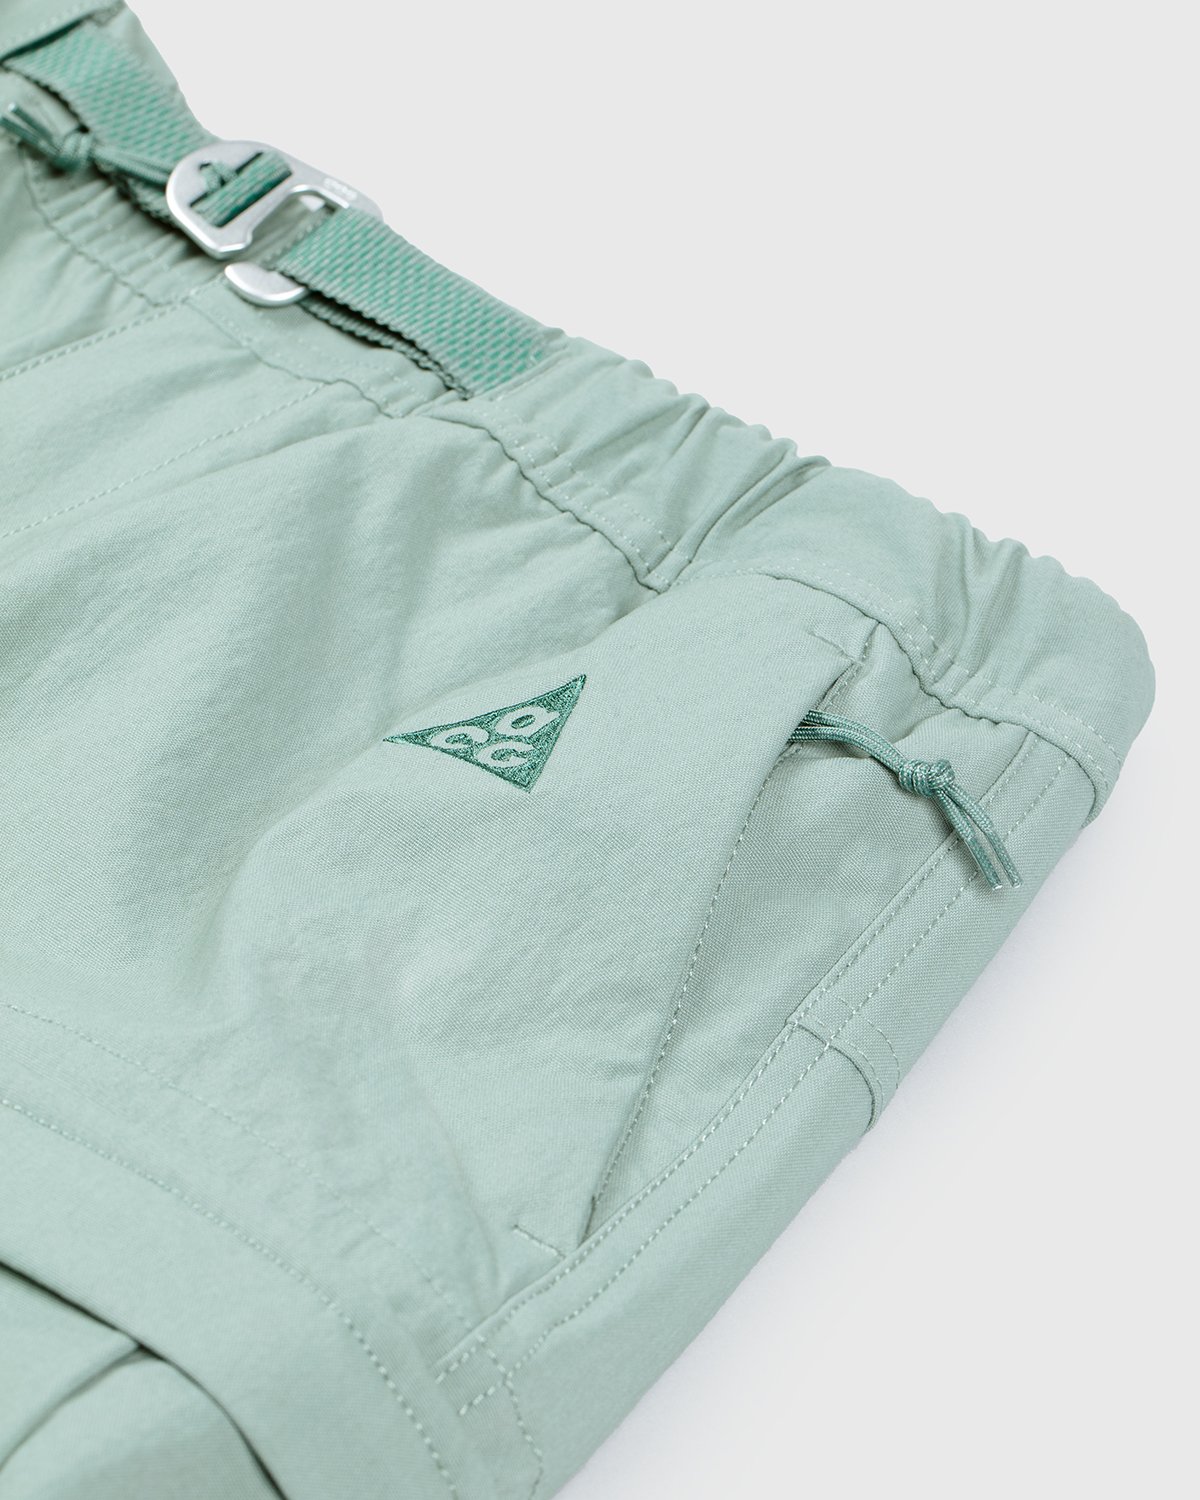 Nike ACG - M NRG ACG Smith Smt Cargo Pant Green - Clothing - Green - Image 4